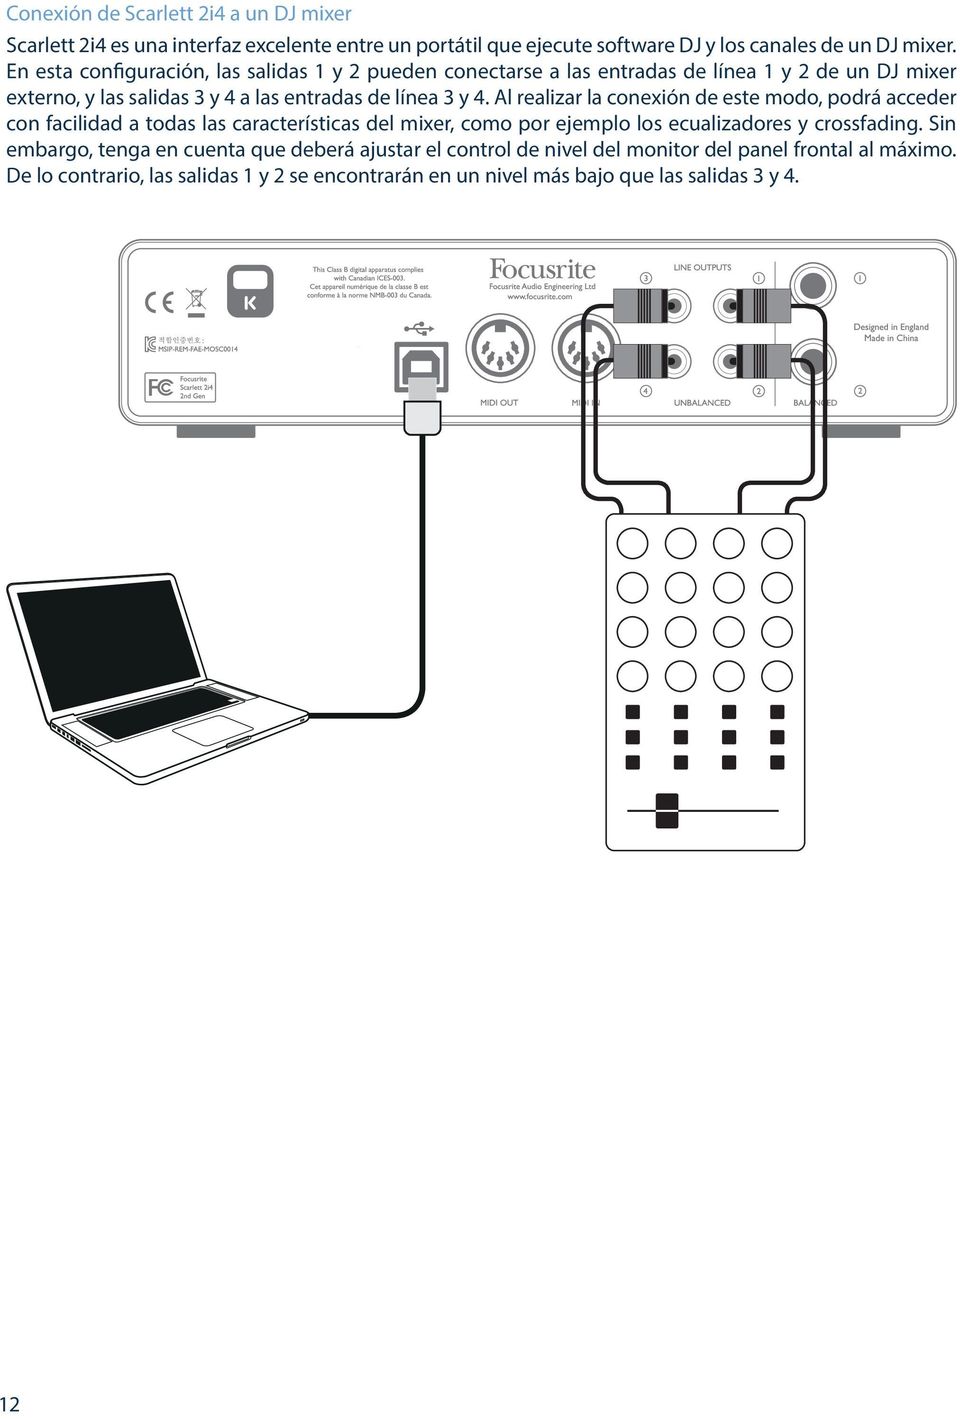 Al realizar la conexión de este modo, podrá acceder con facilidad a todas las características del mixer, como por ejemplo los ecualizadores y crossfading.